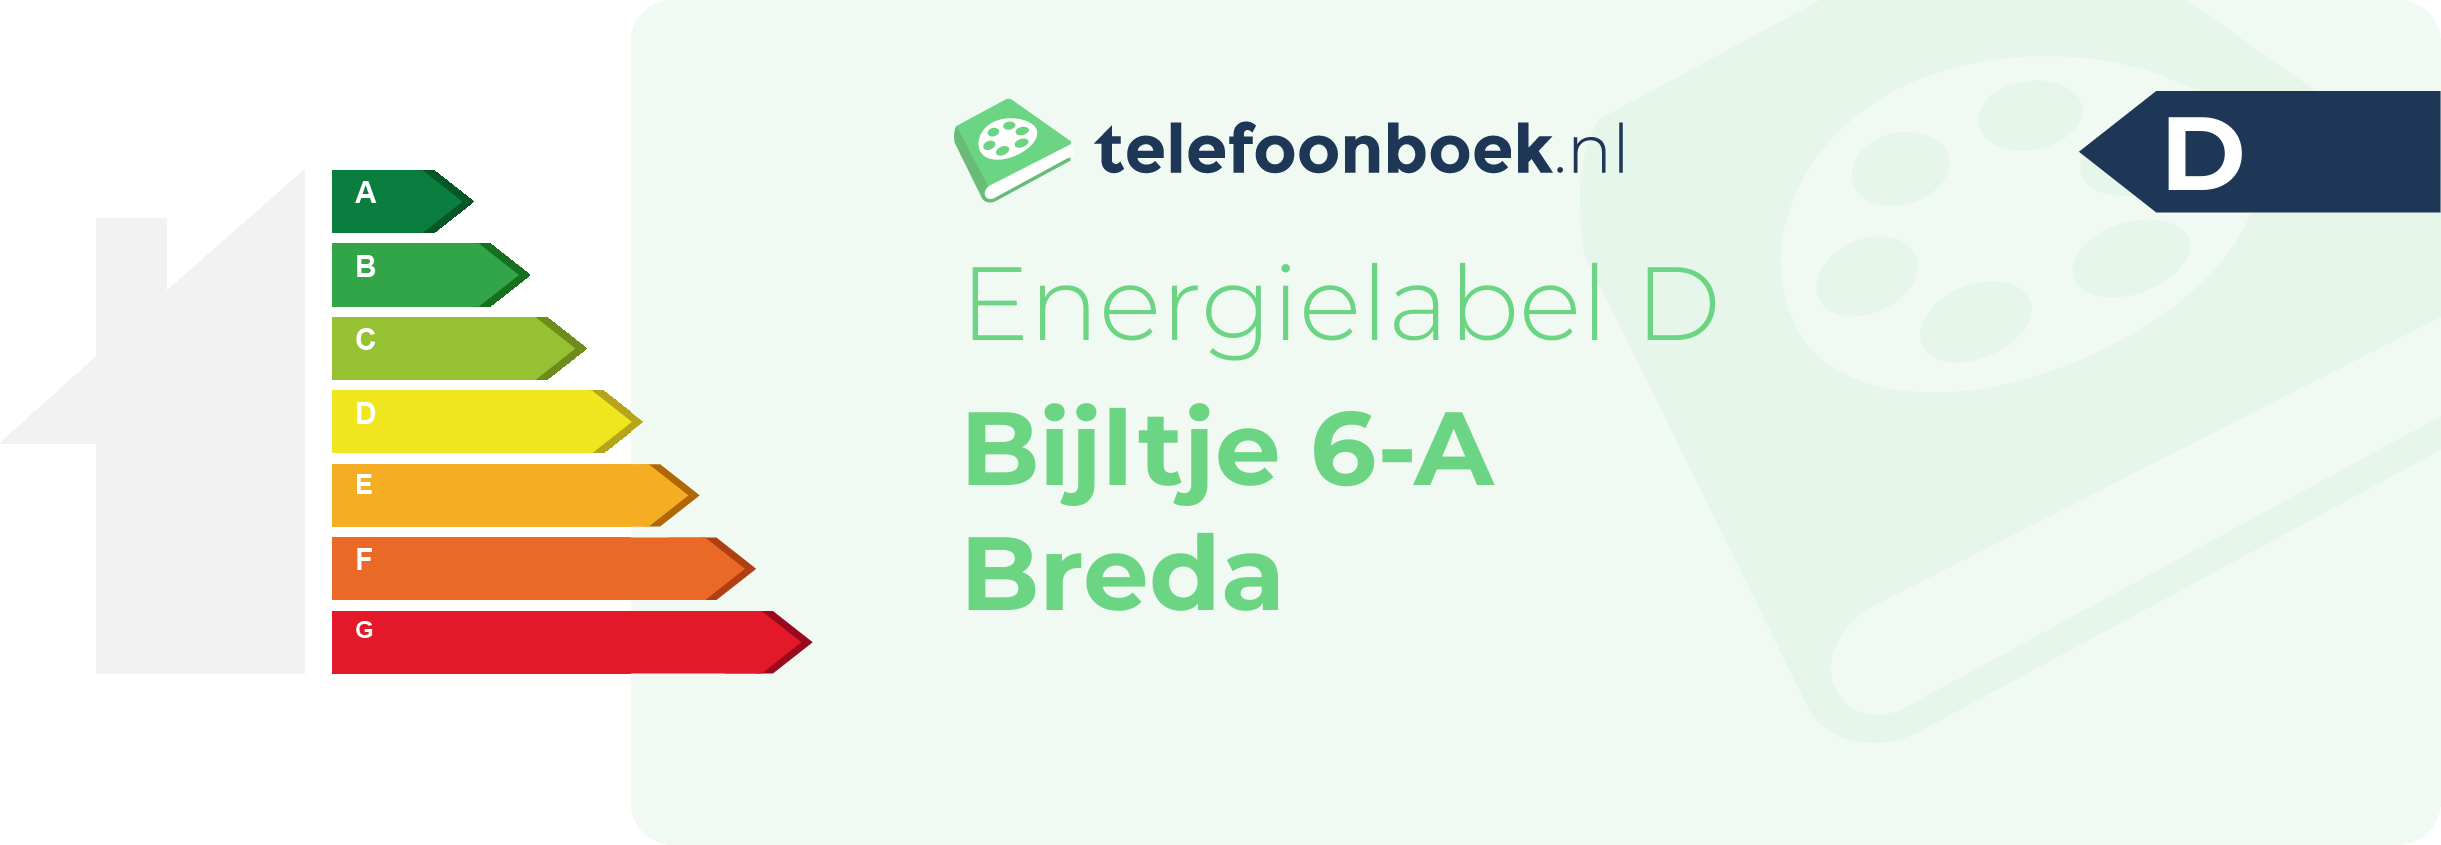 Energielabel Bijltje 6-A Breda